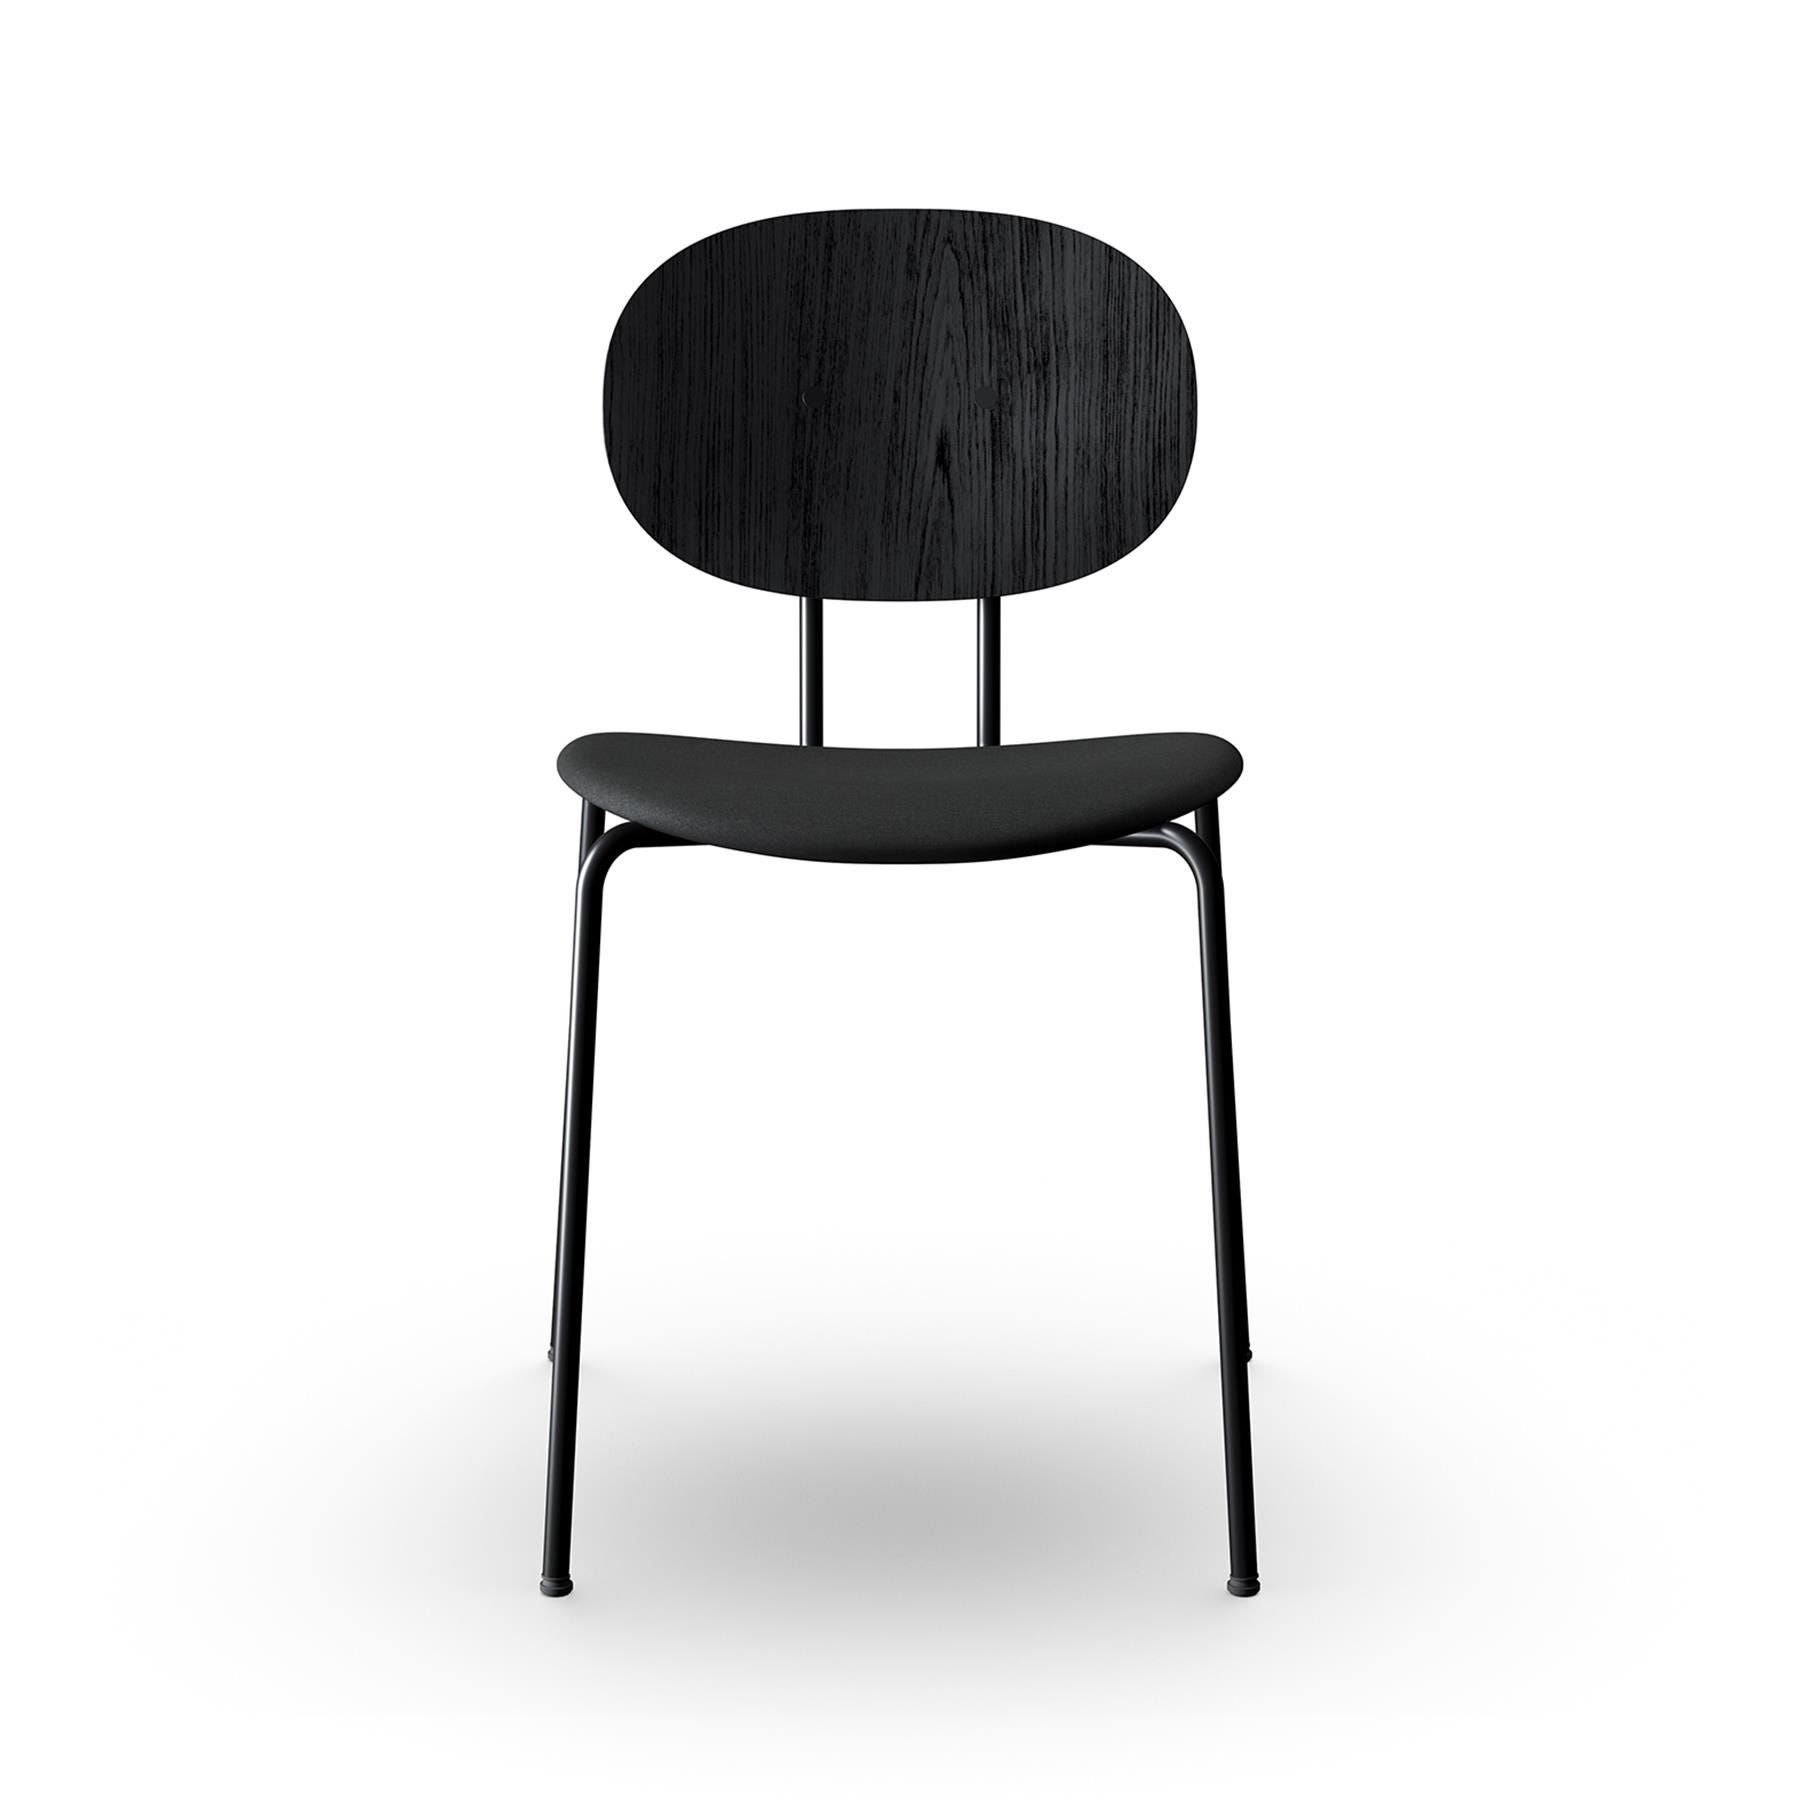 Sibast Piet Hein Dining Chair Black Steel Black Oak Remix 383 Designer Furniture From Holloways Of Ludlow